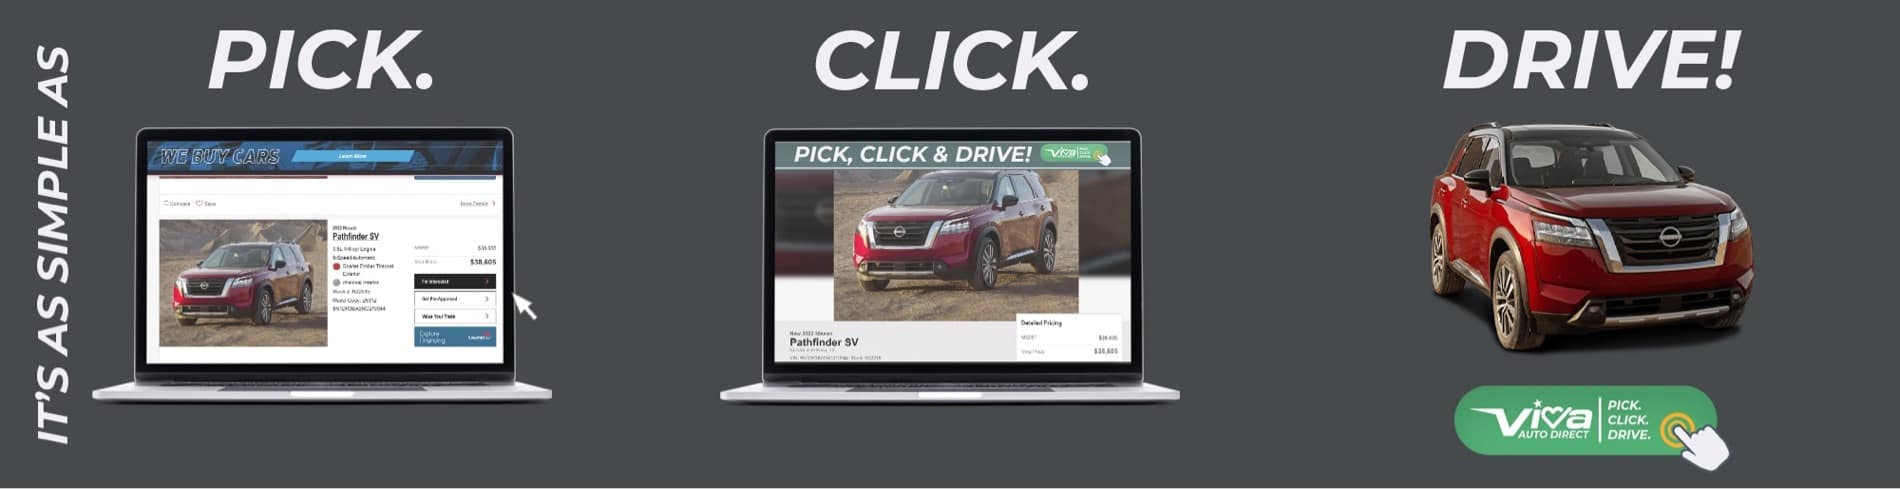 pick click drive